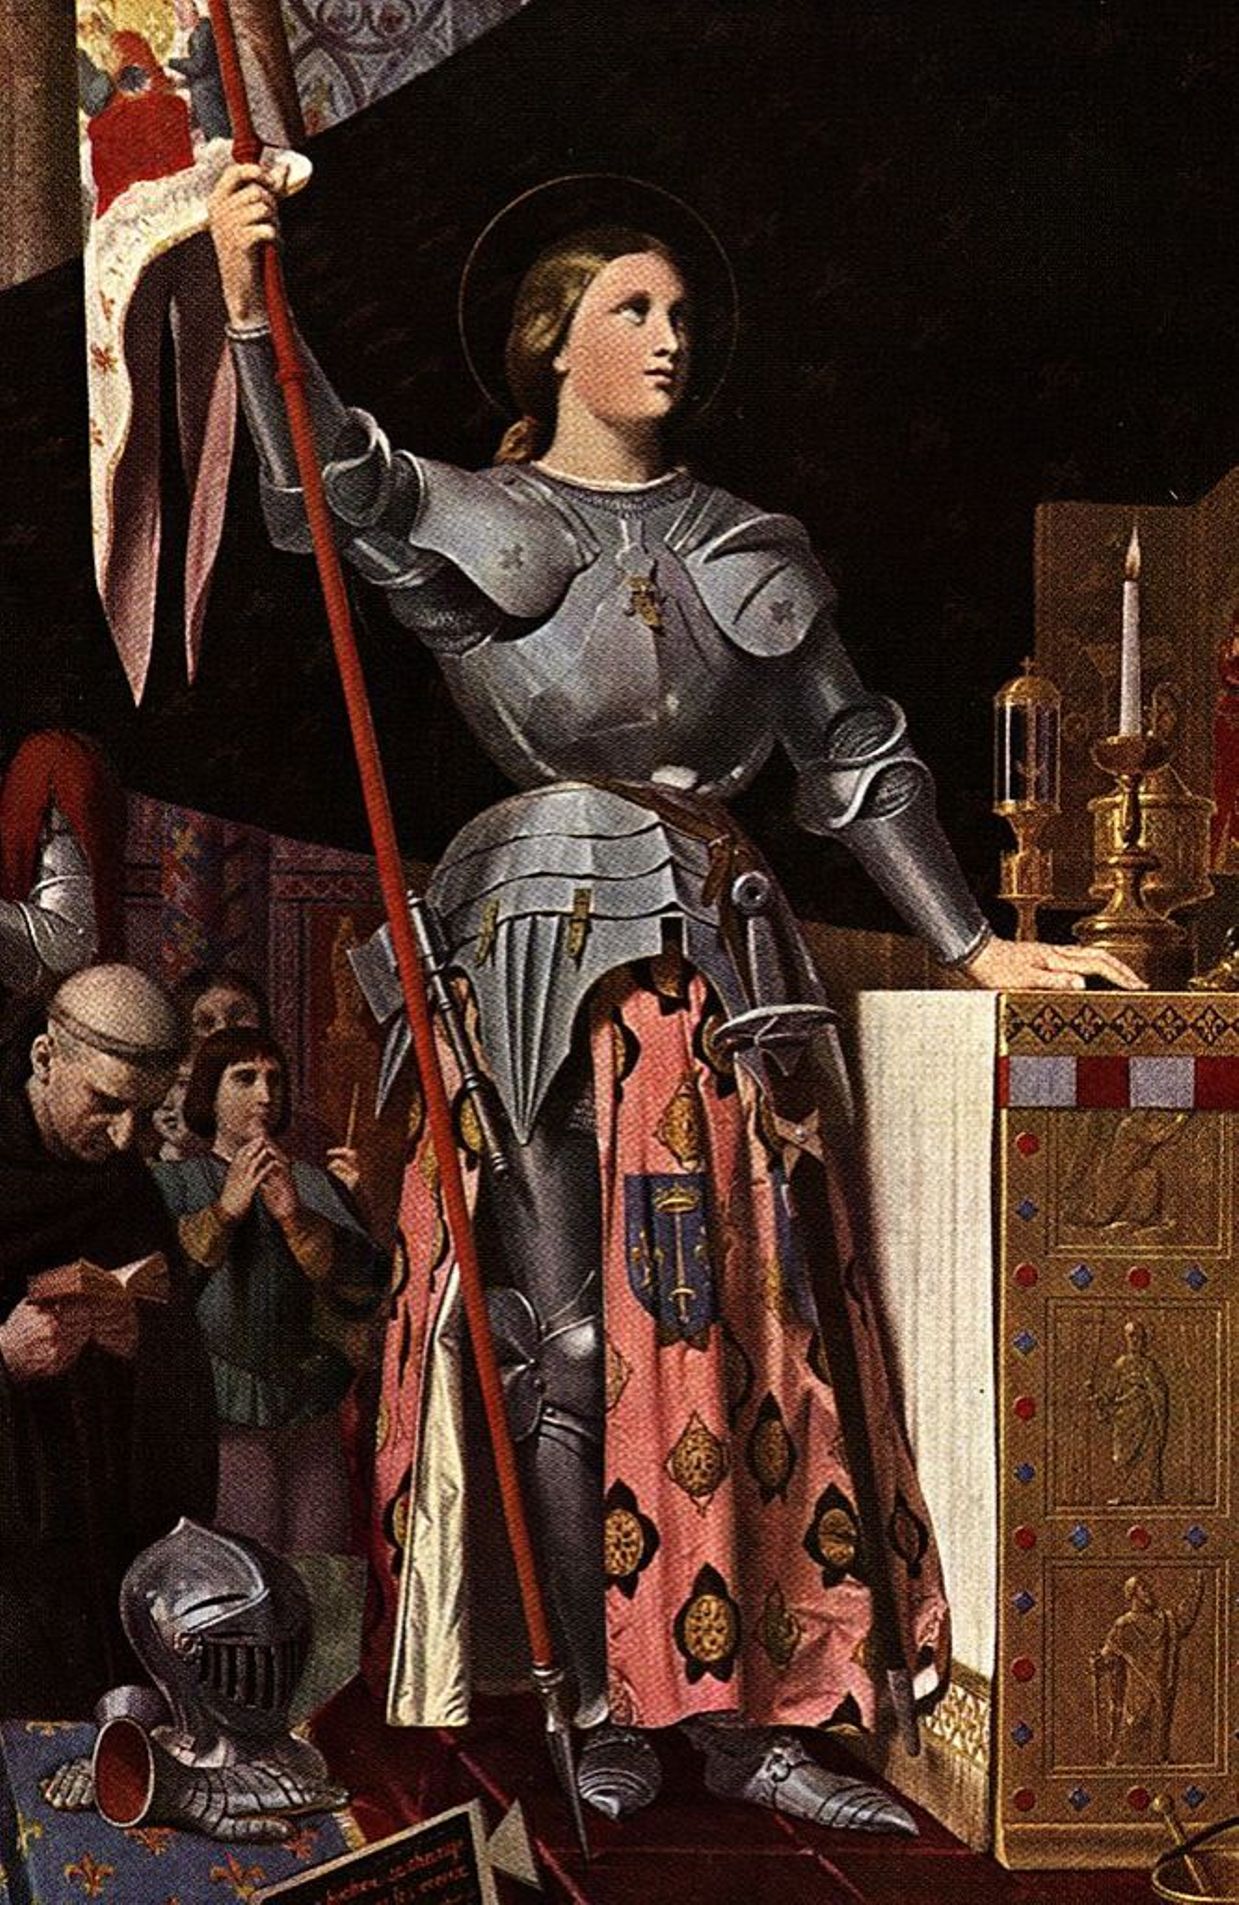 Jeanne d'Arc, la 'pucelle' d'Orléans, en armure, à la cathédrale de Reims pour le couronnement du dauphin en tant que roi Charles V en 1429.